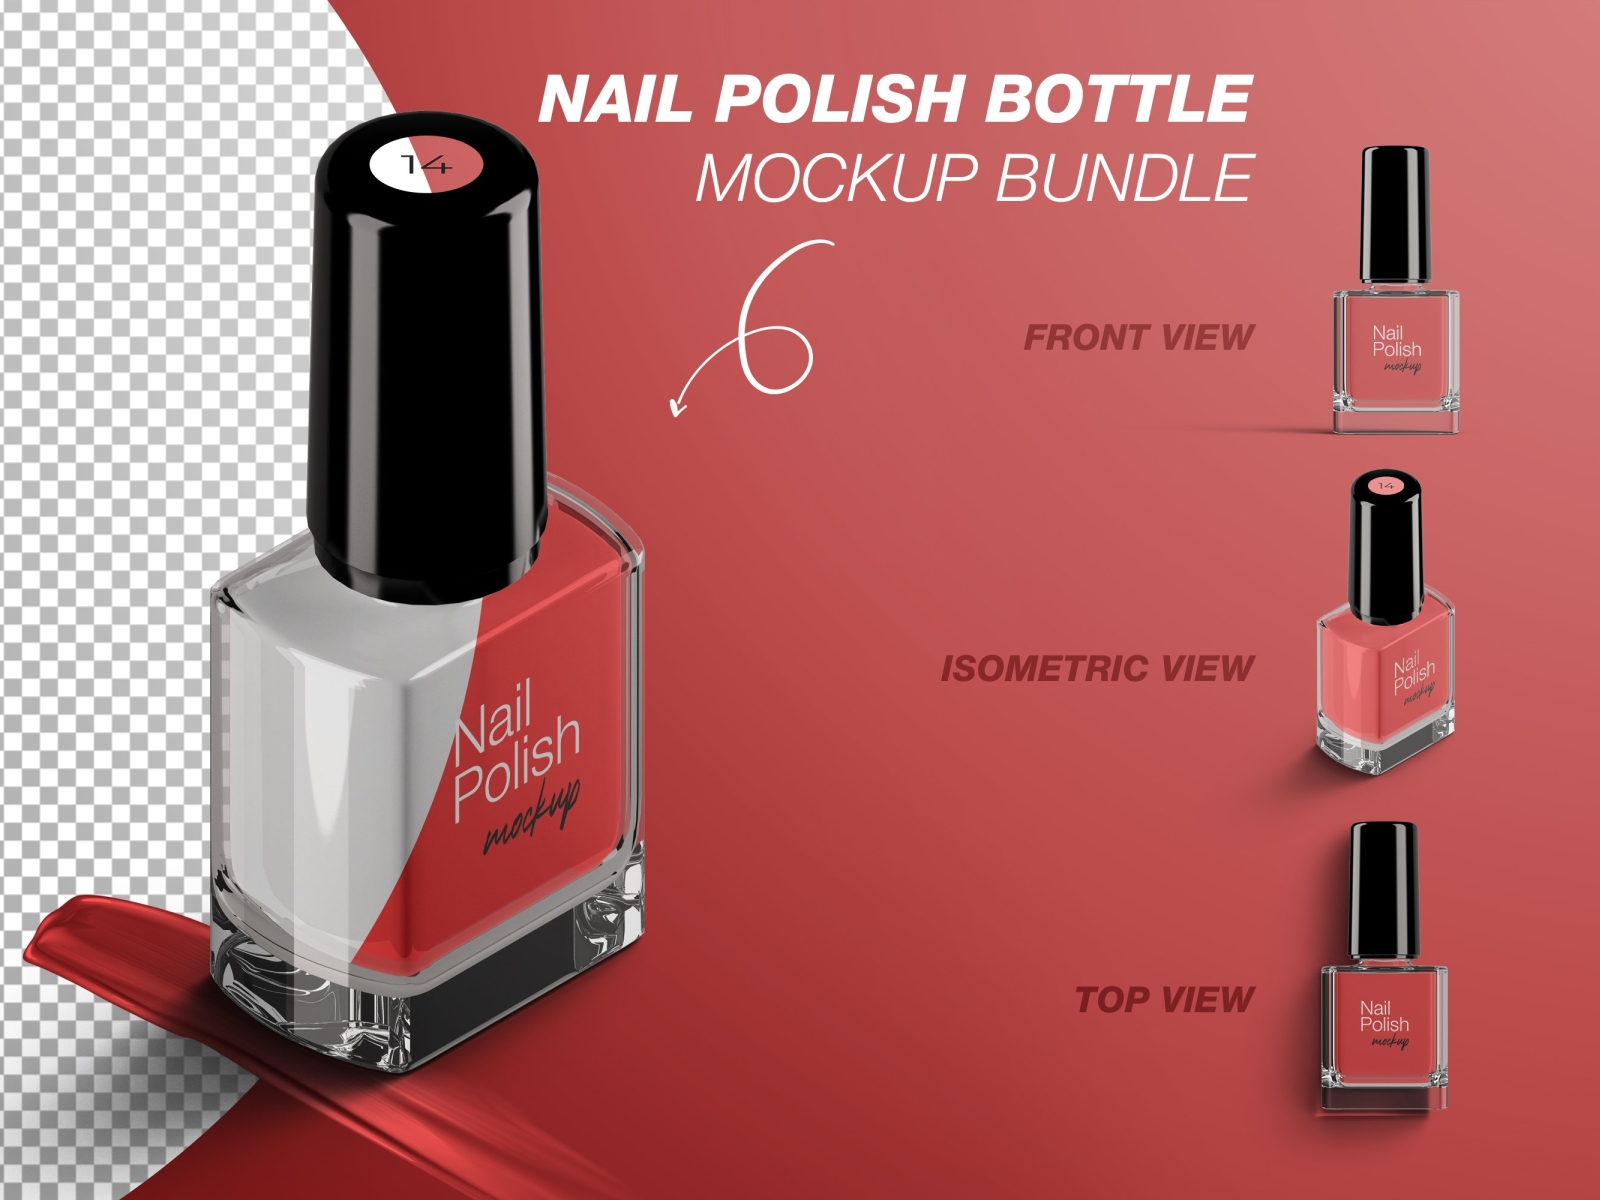 9. Nail Polish Bottle Mockup Design - wide 7